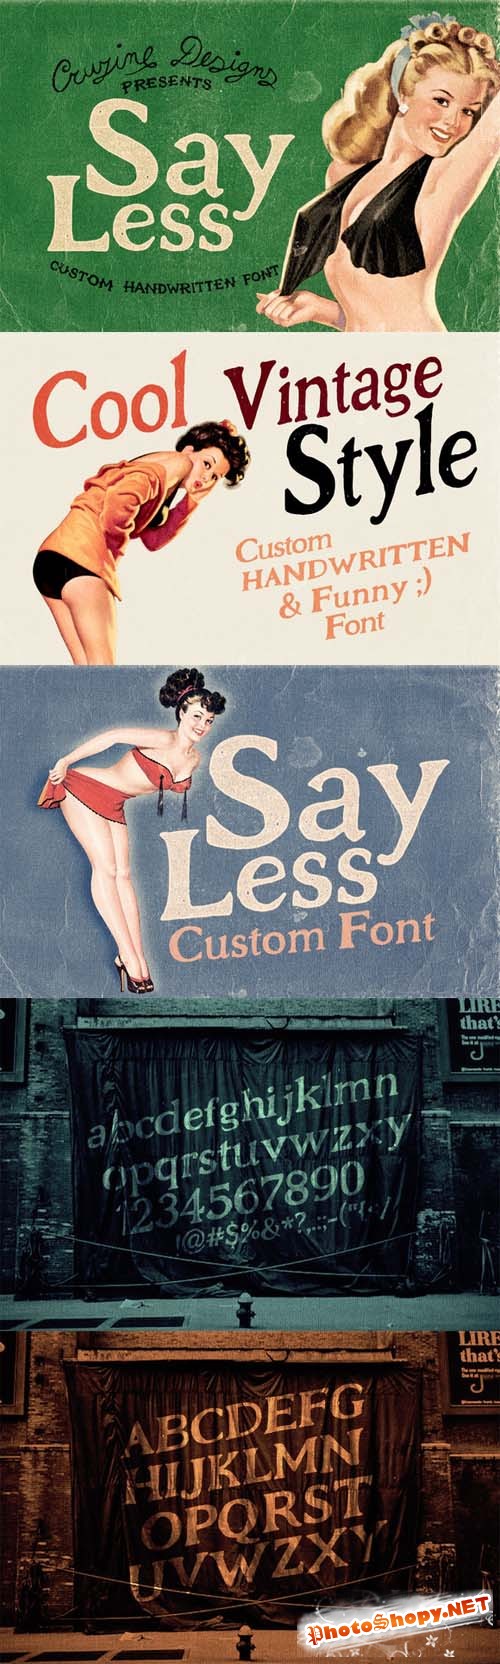 Say Less Custom Font